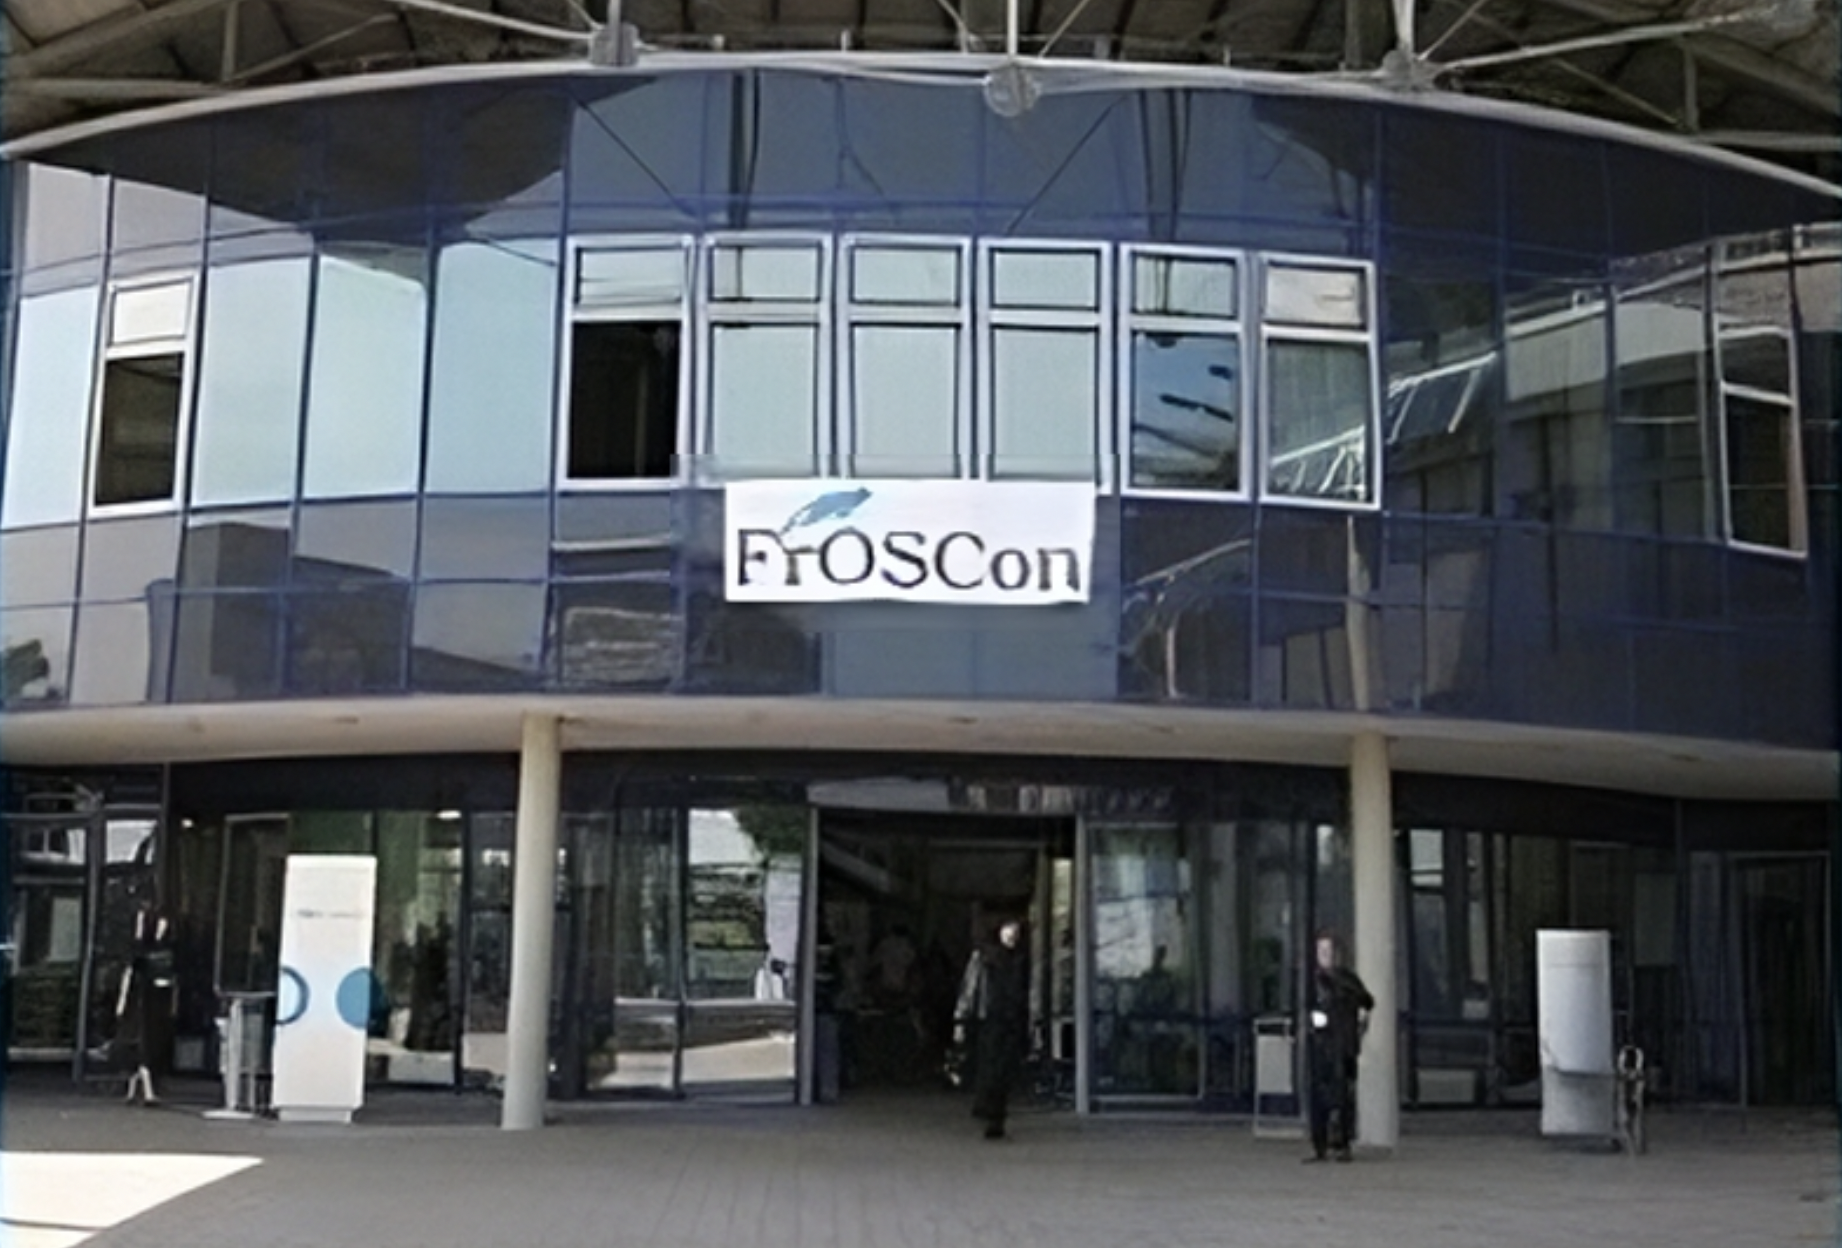 FrOSCon entrance photo